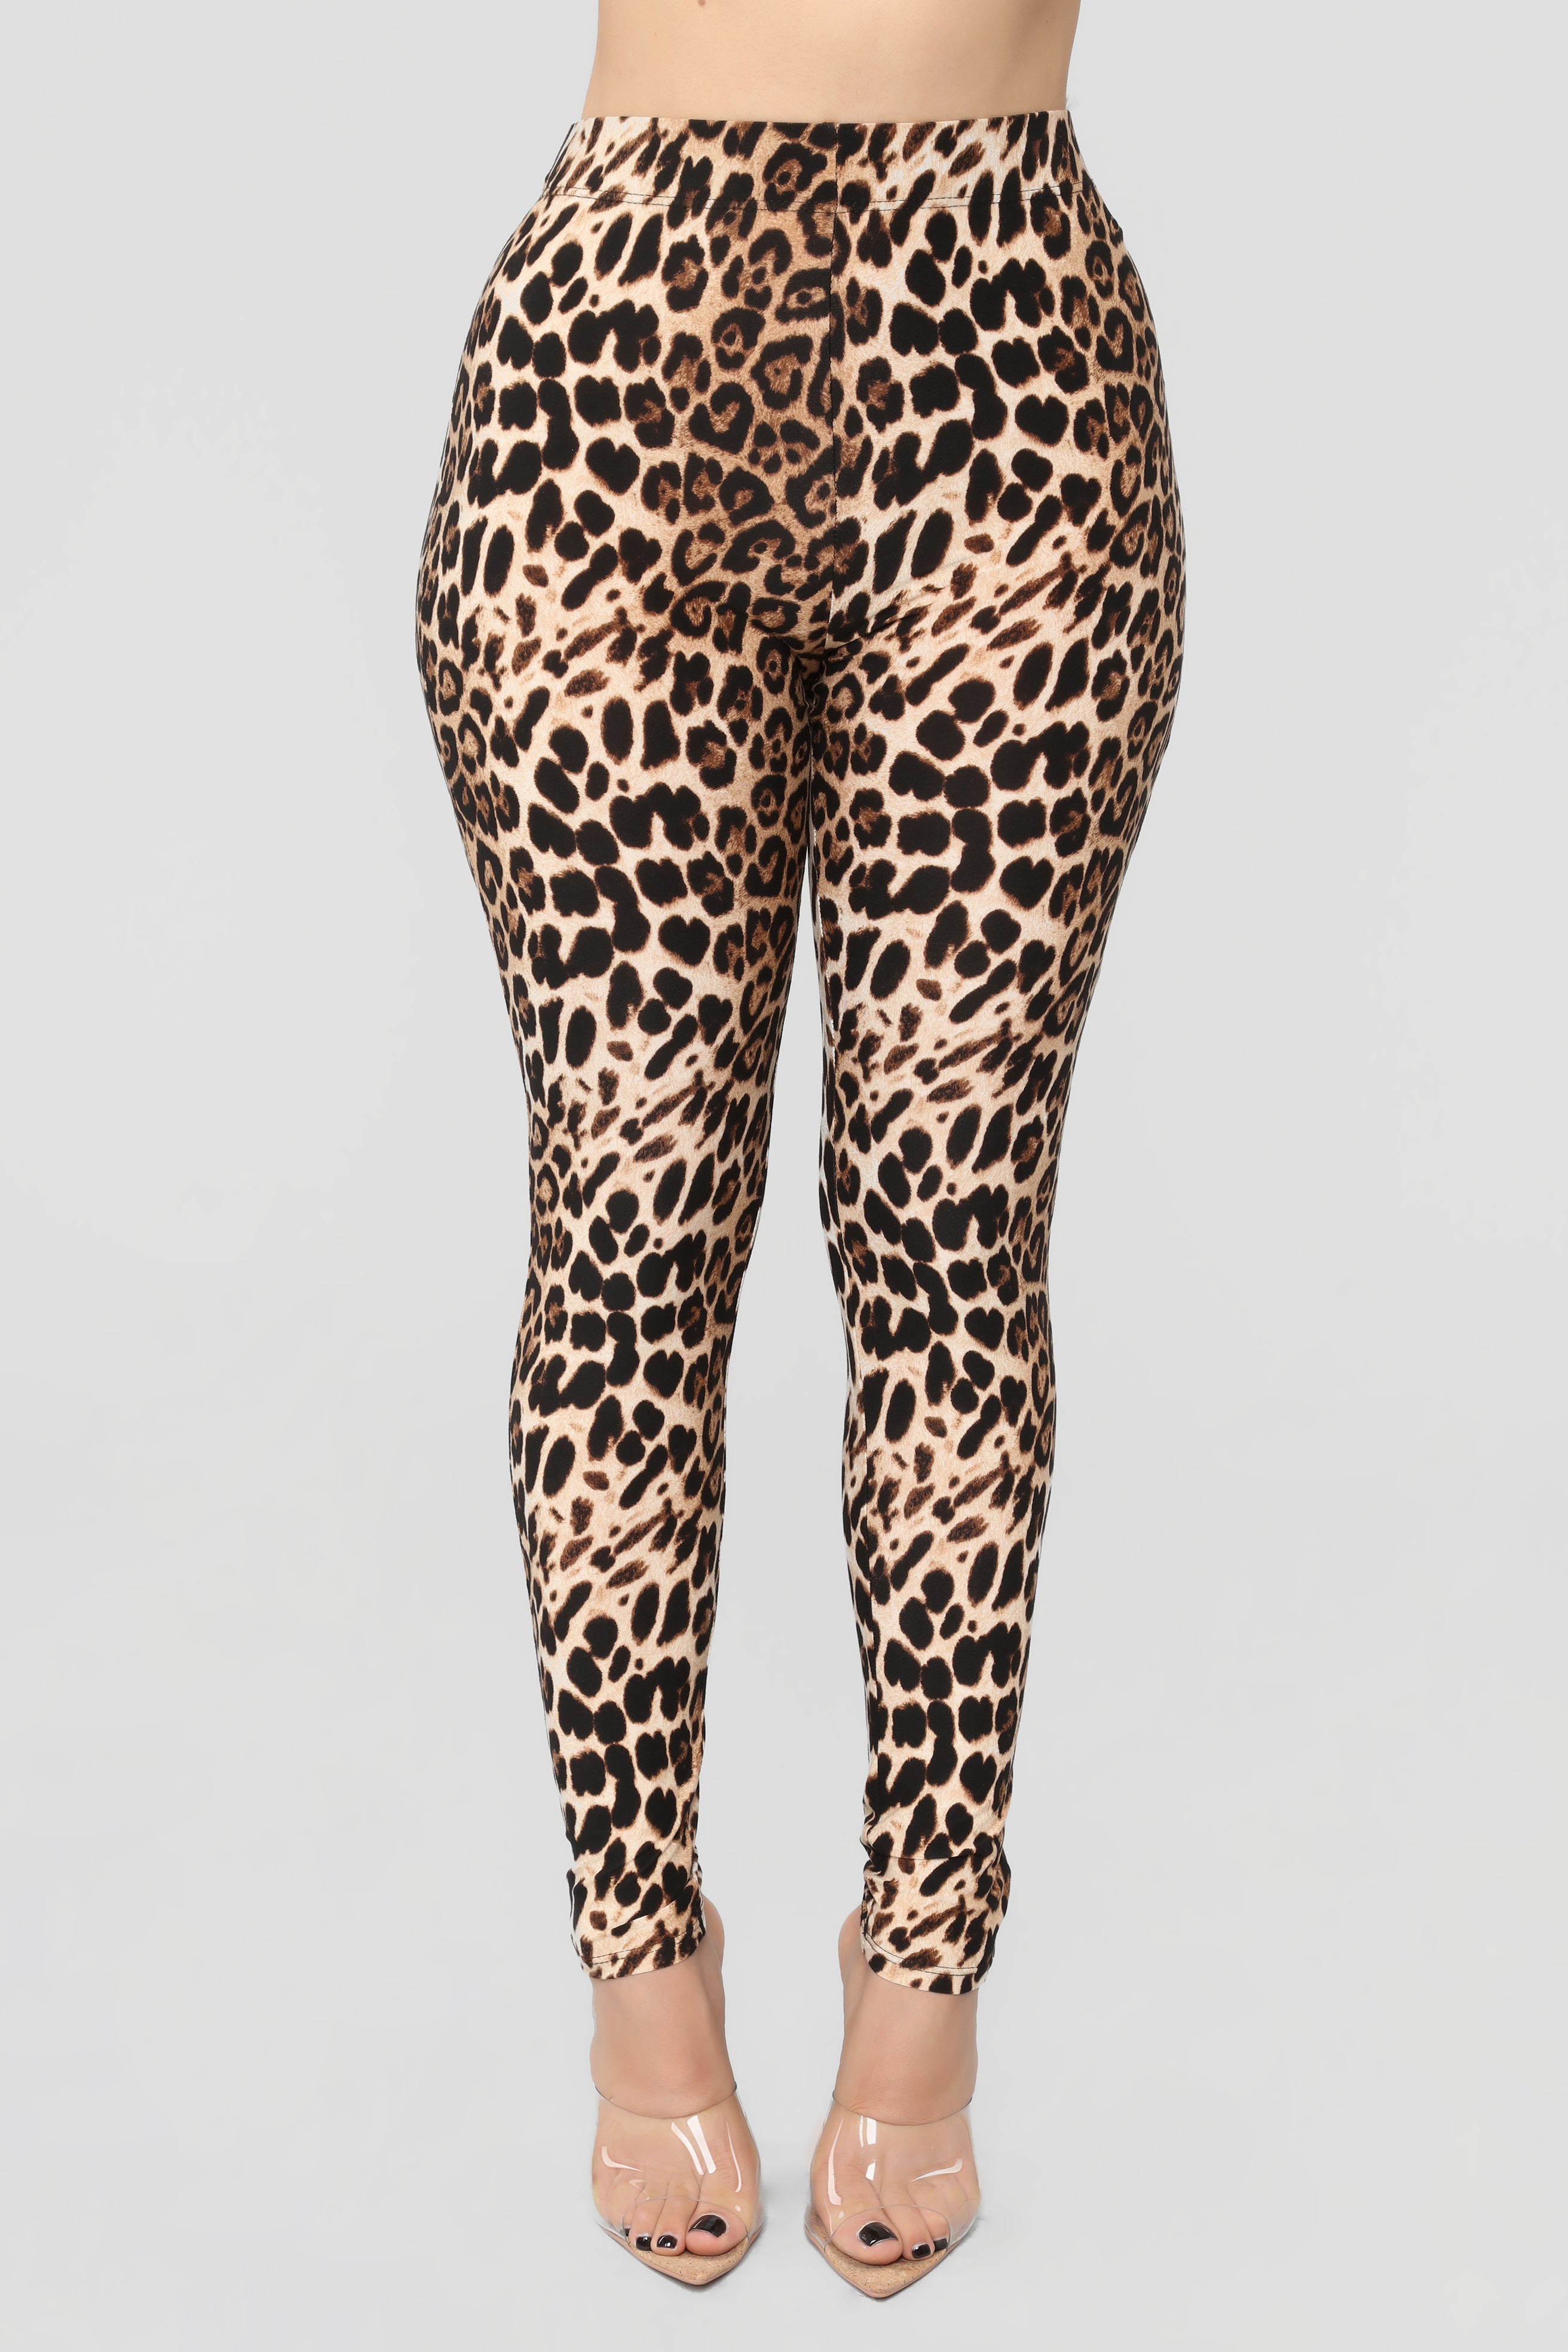 Show Them Your Spots Leggings - Leopard